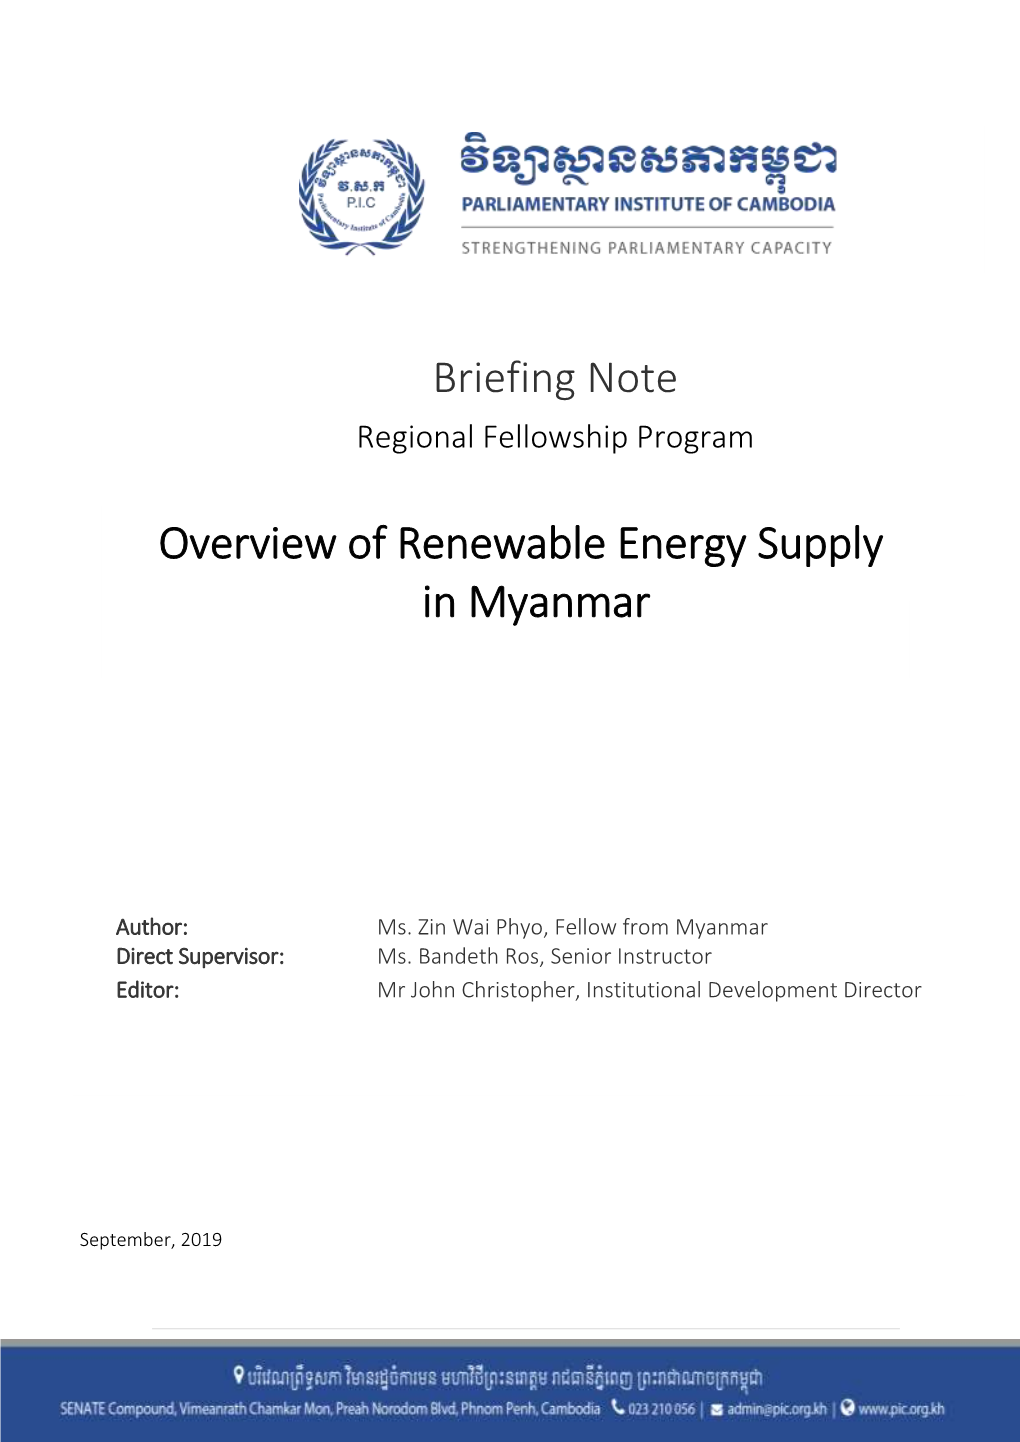 20191014 Overview of Renewable Energy Supply in Myanmar